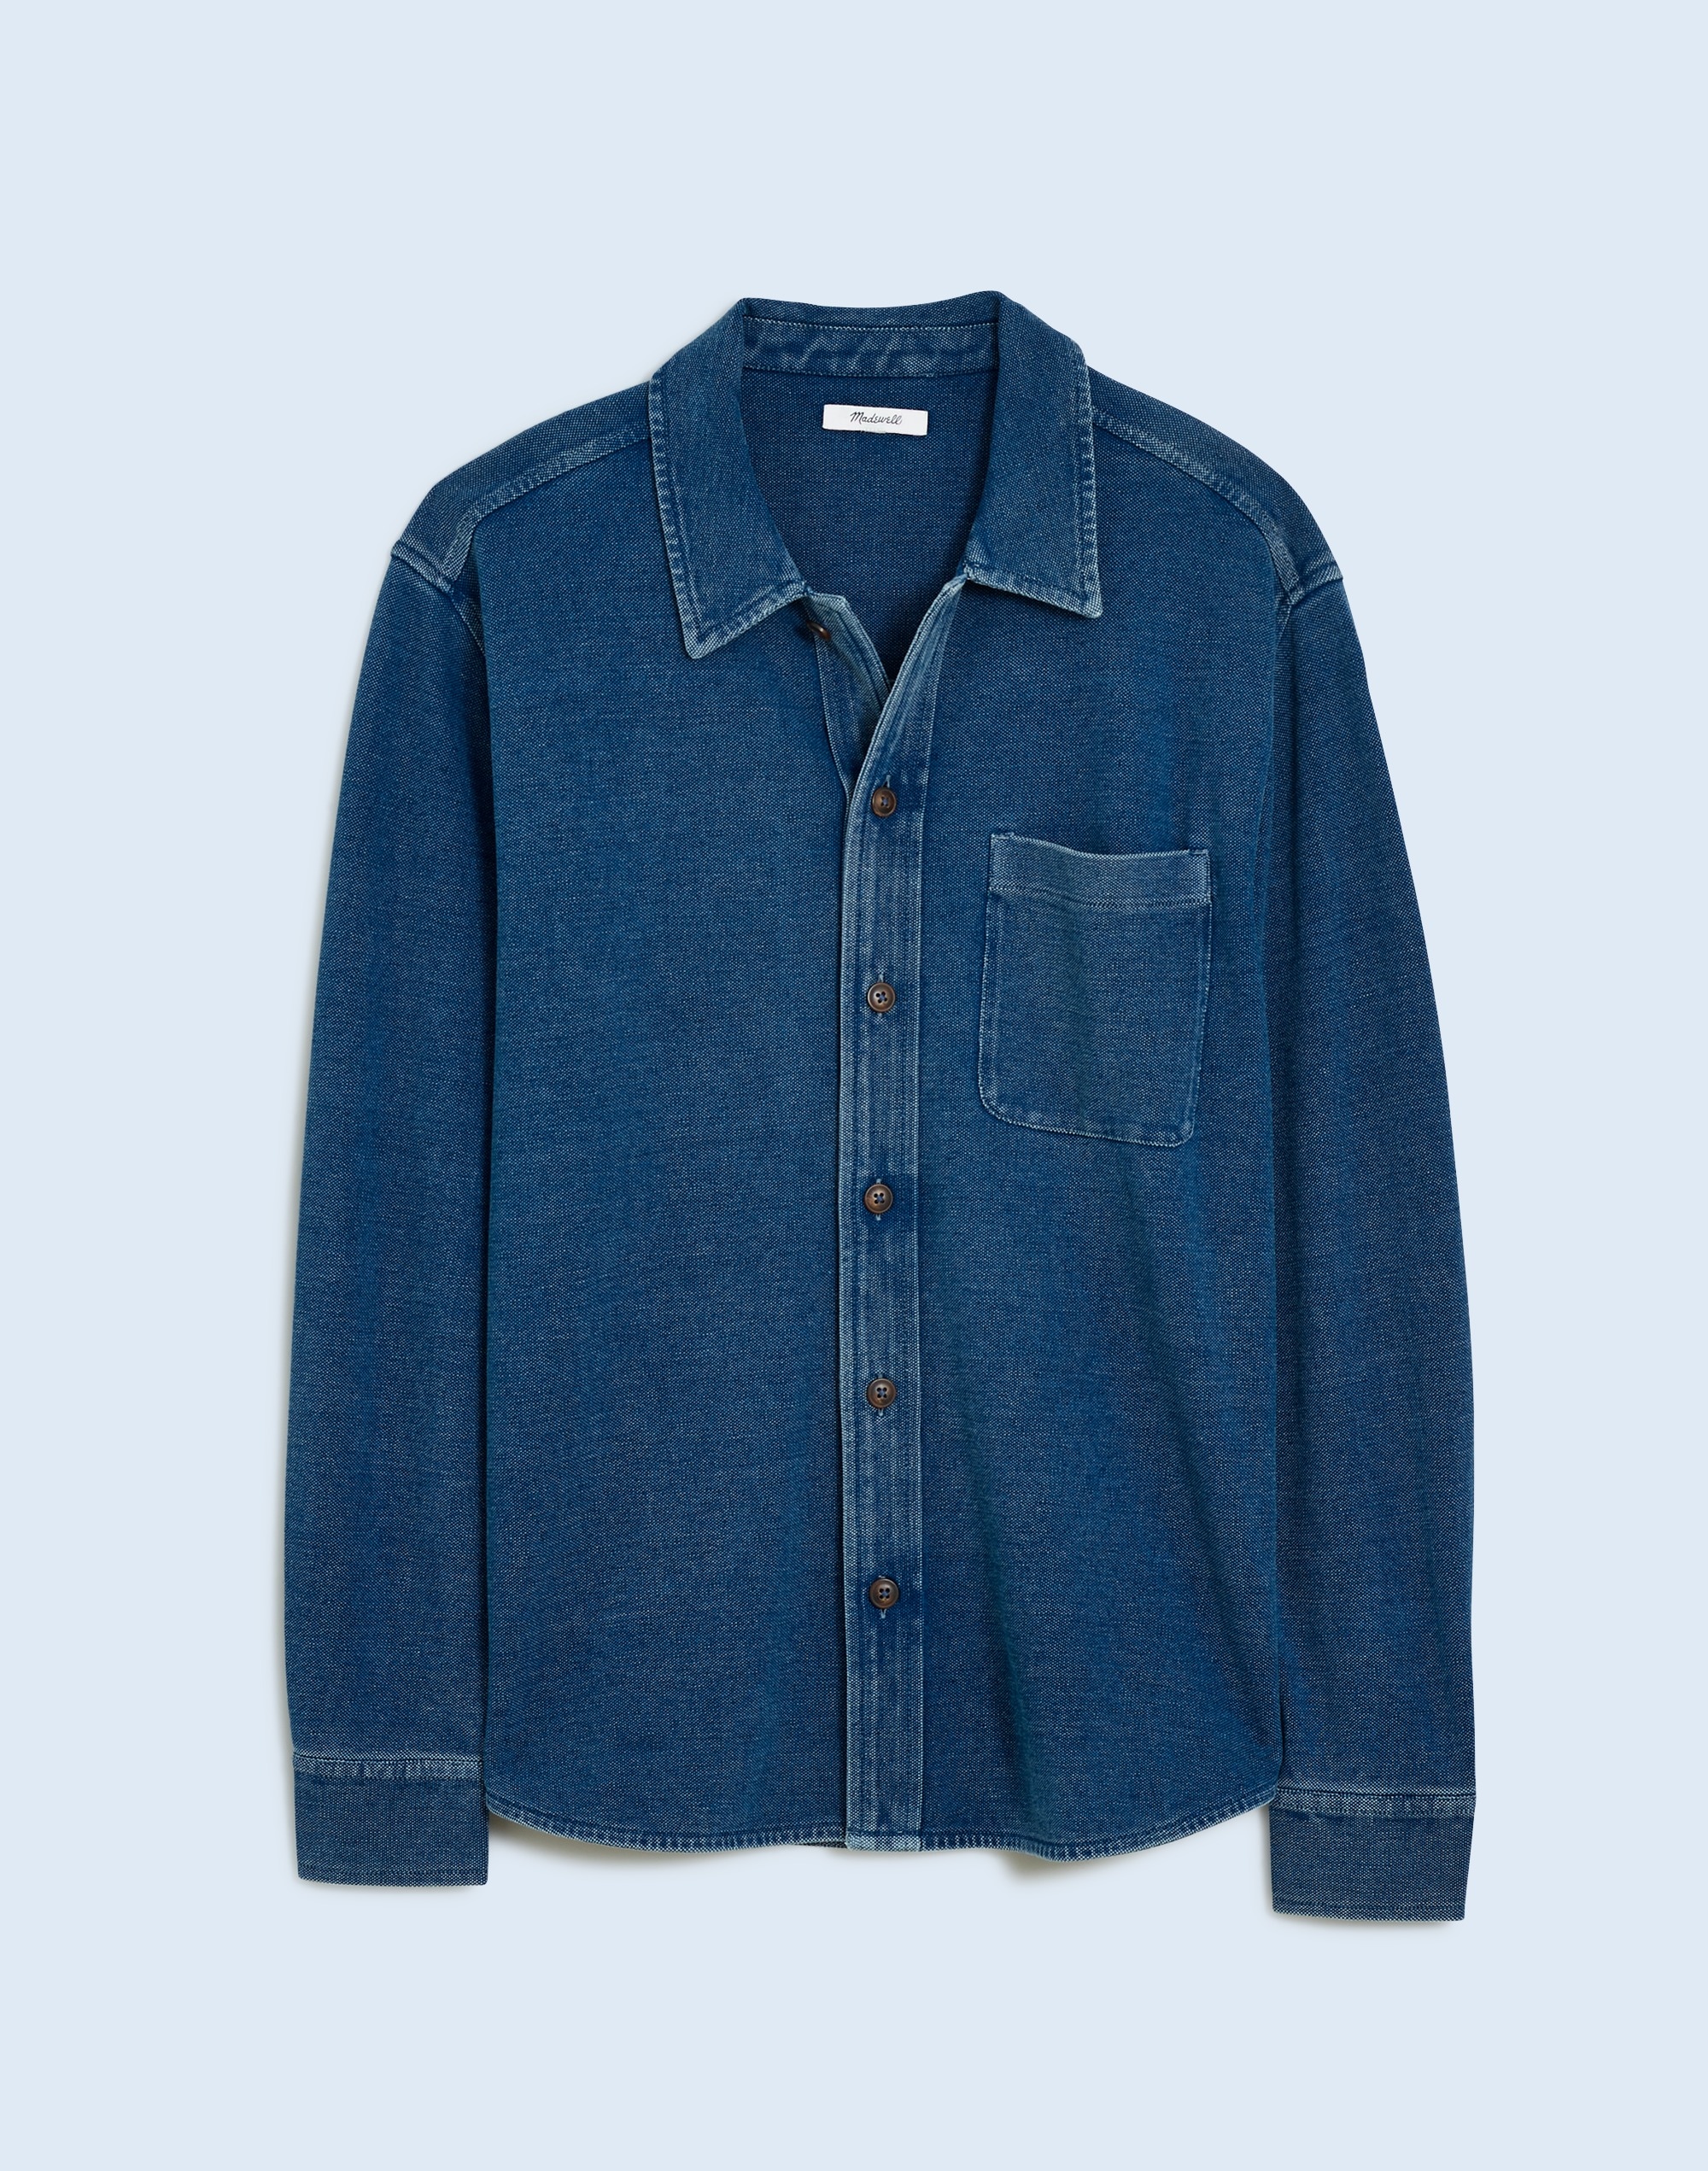 Indigo-Dyed Long-Sleeve Shirt Cotton Pique